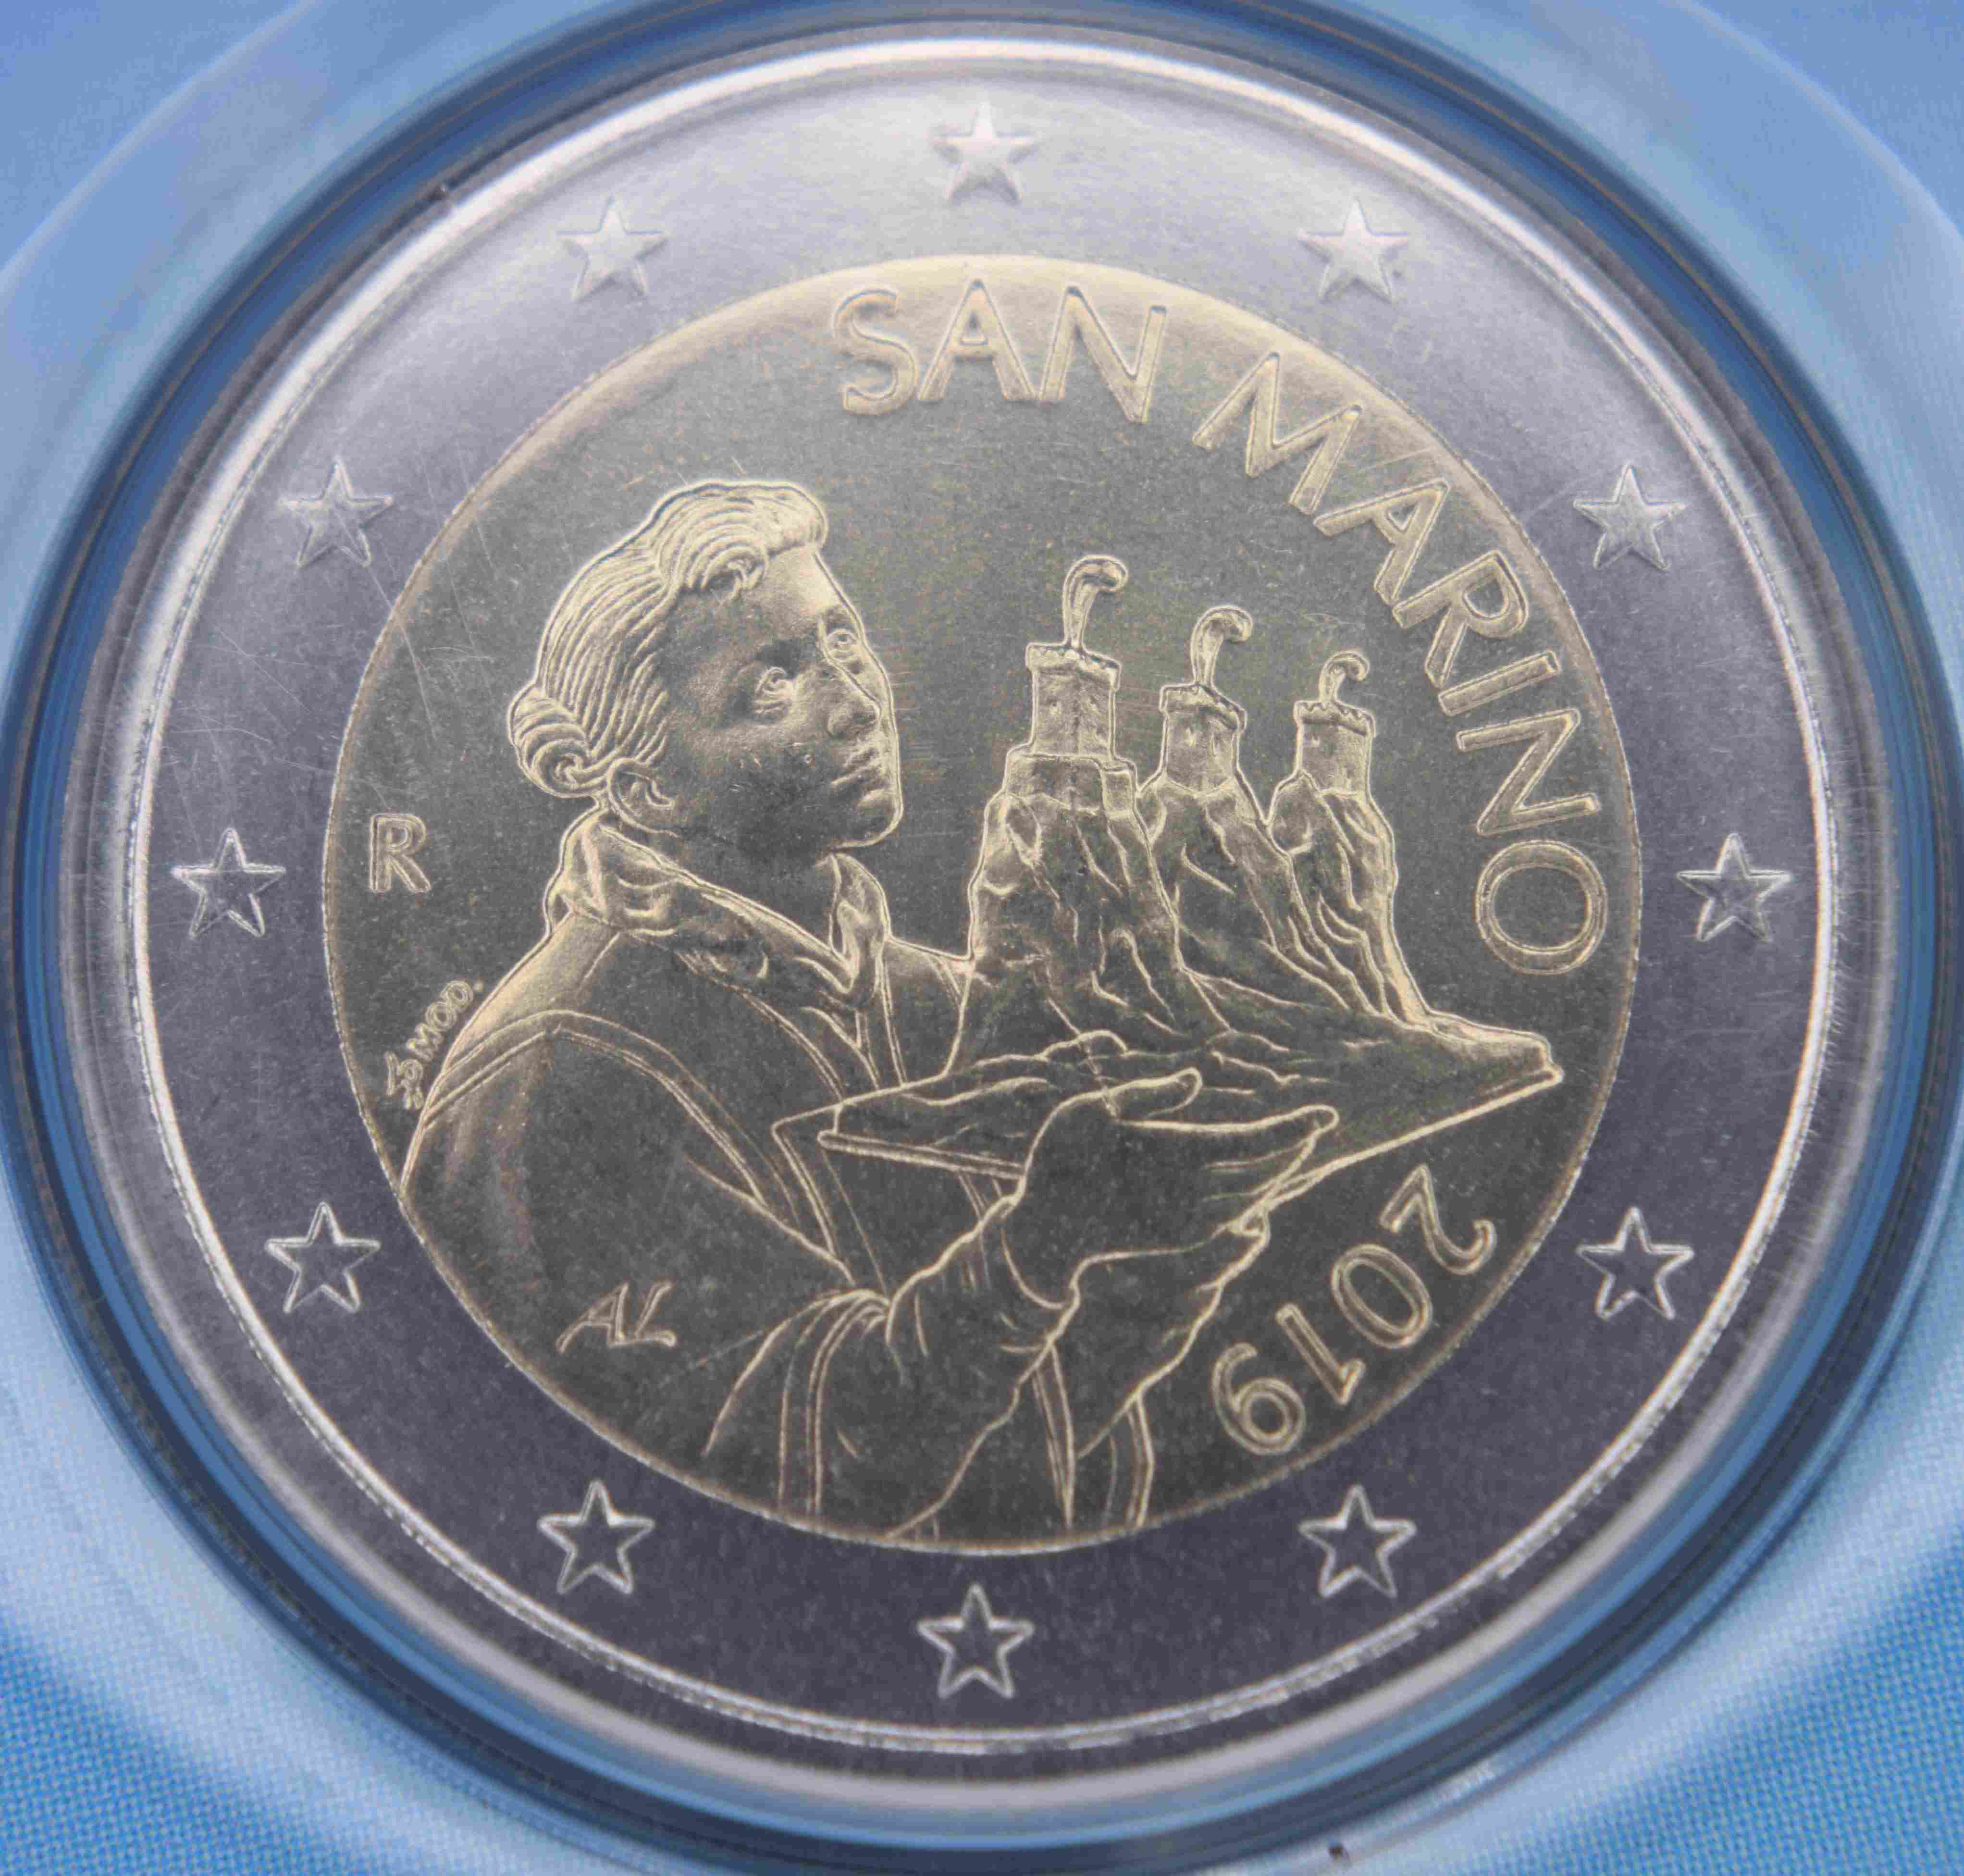 San Marino 2 Euro Münze 2019 Euro Muenzentv Der Online Euromünzen